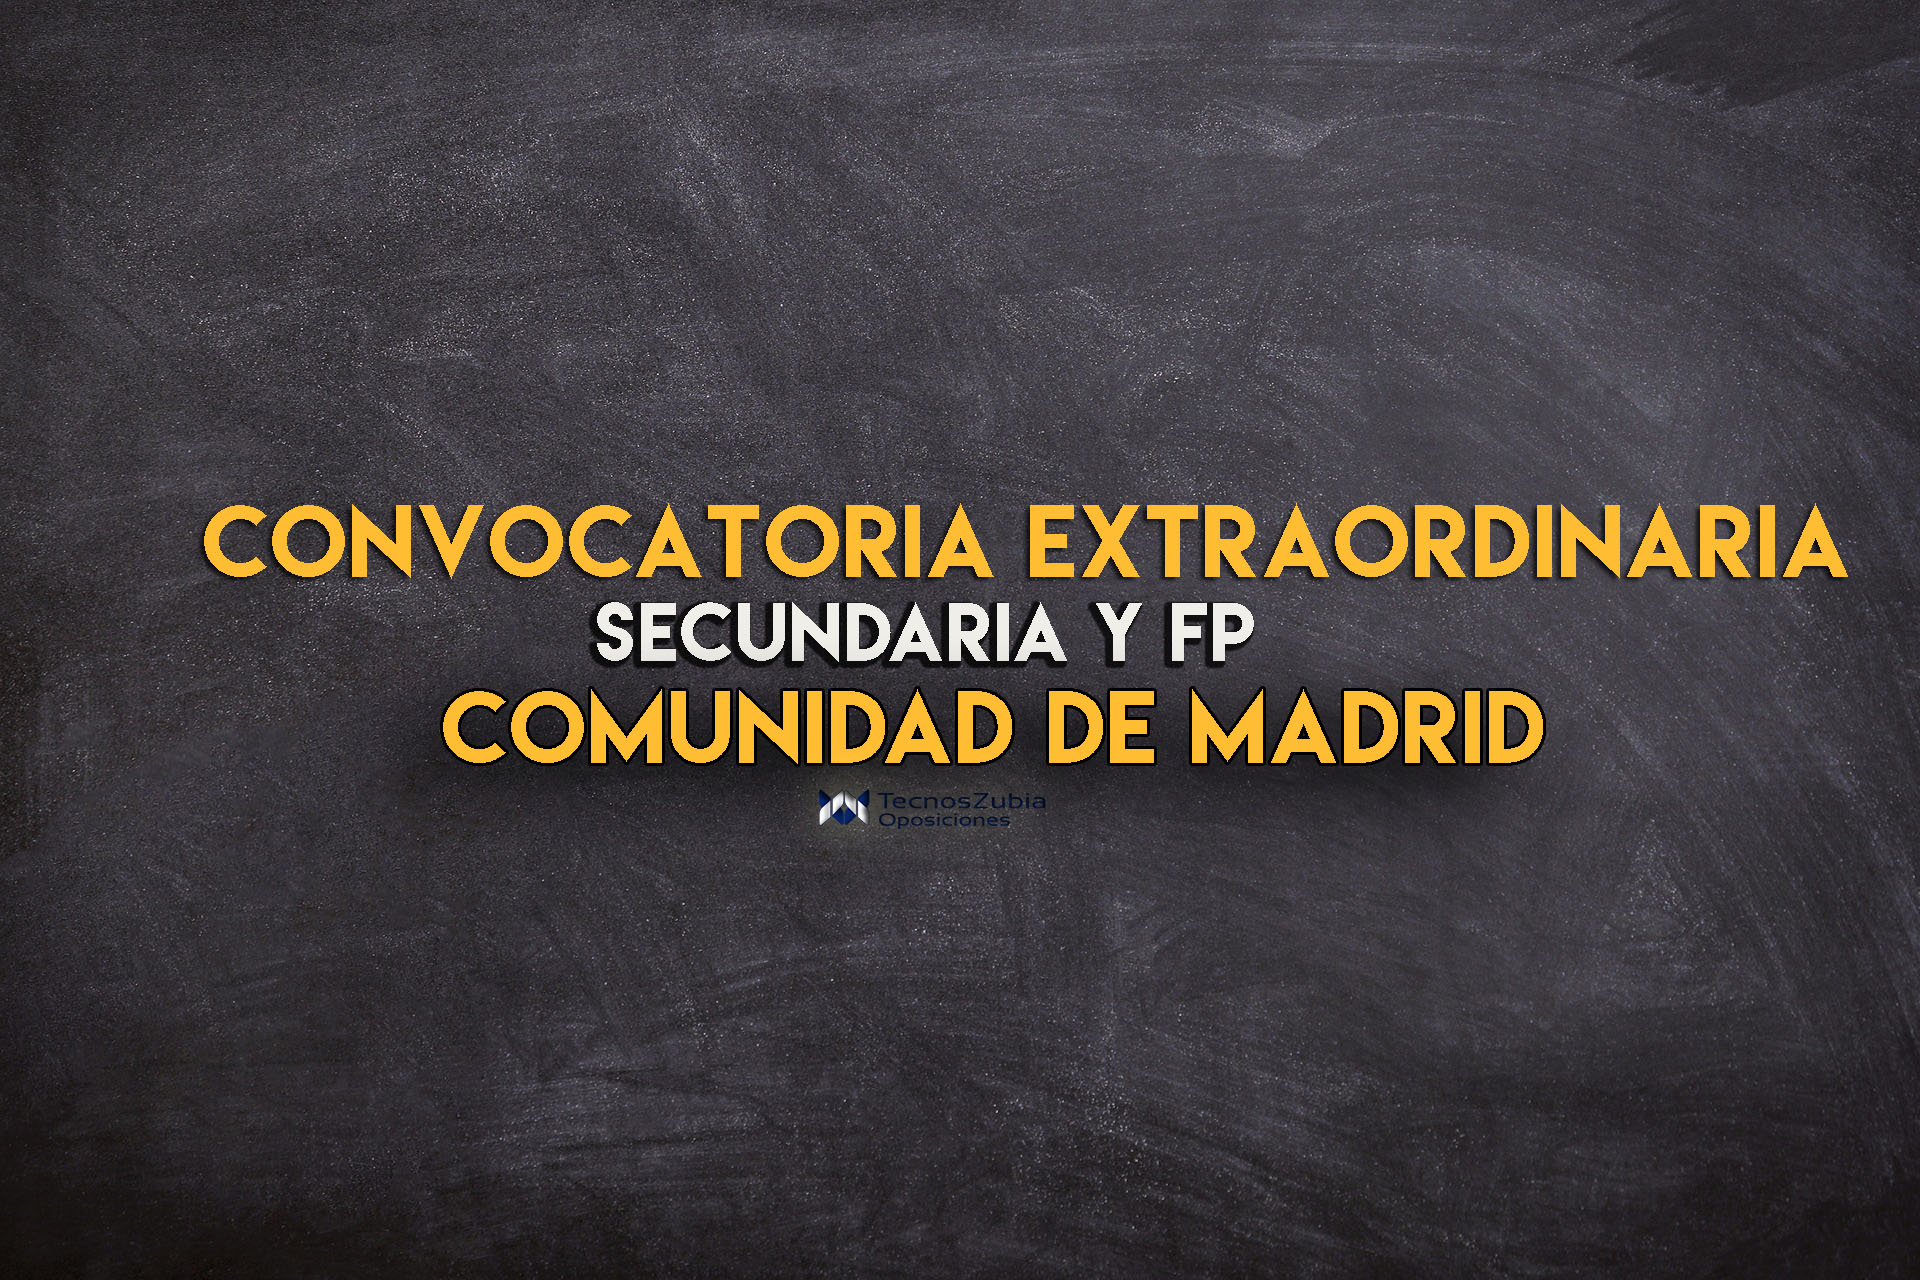 Convocatoria extraordinaria secundaria y FP. Comunidad de Madrid.